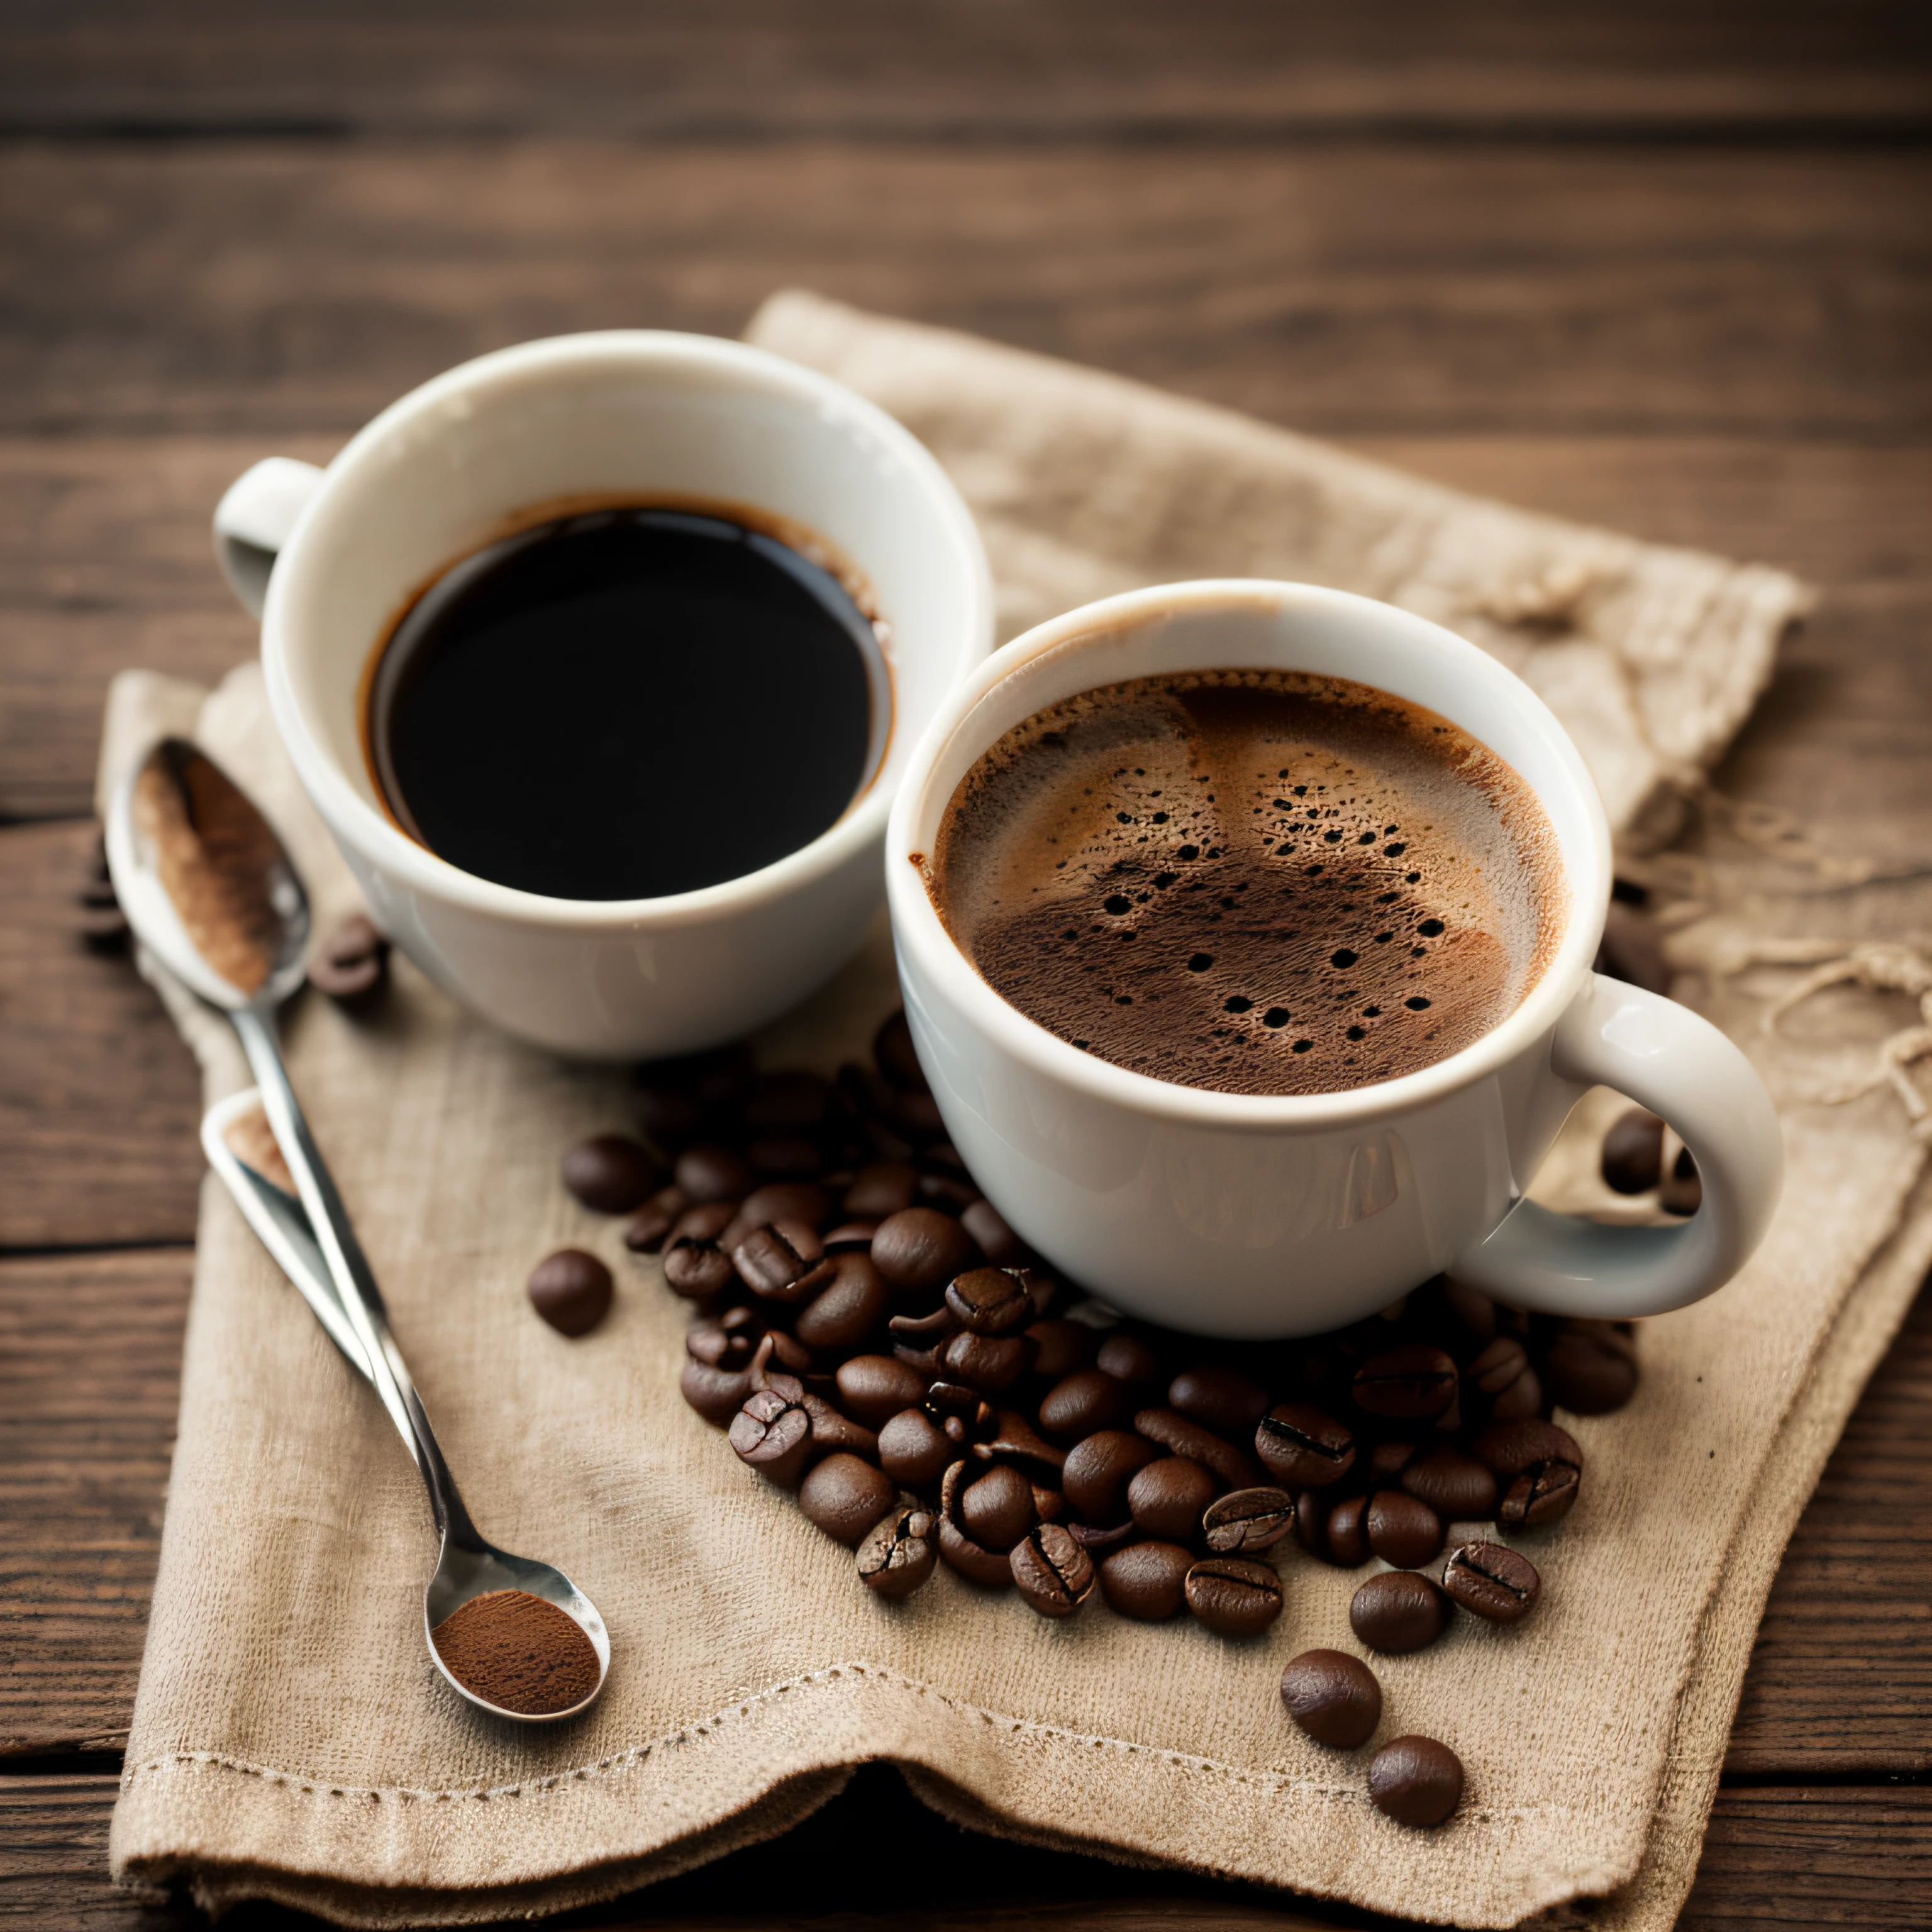 烘焙过的咖啡和咖啡豆铺在布上，配上一杯用 35mm HDR 超现实微距相机拍摄的粘土咖啡